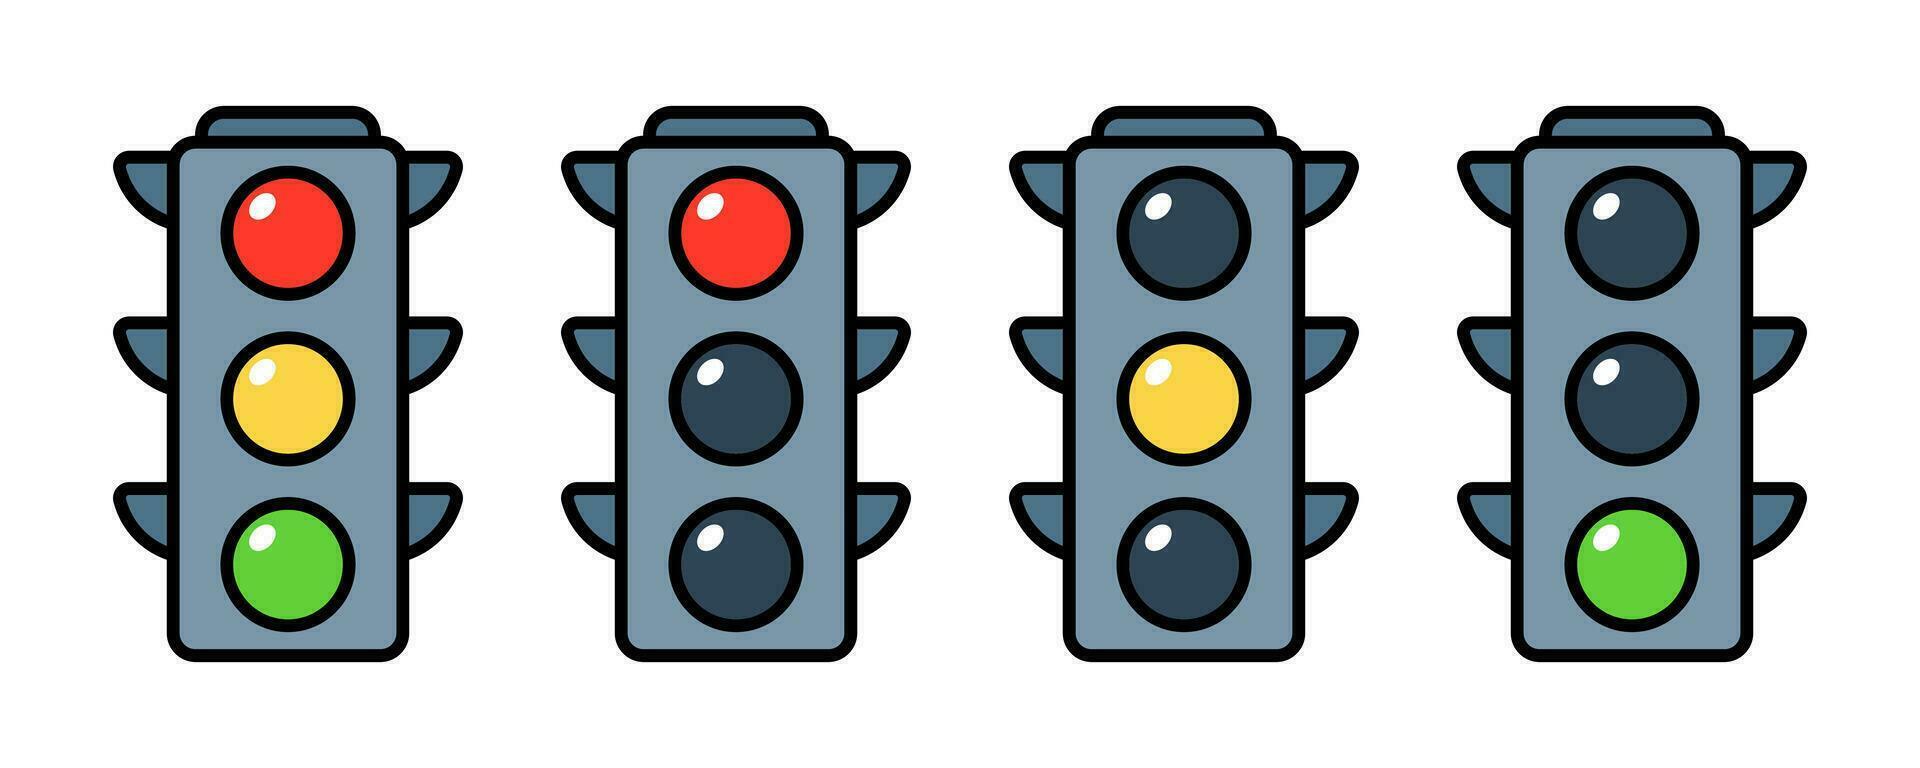 Vector Traffic Light Flat Design Illustration